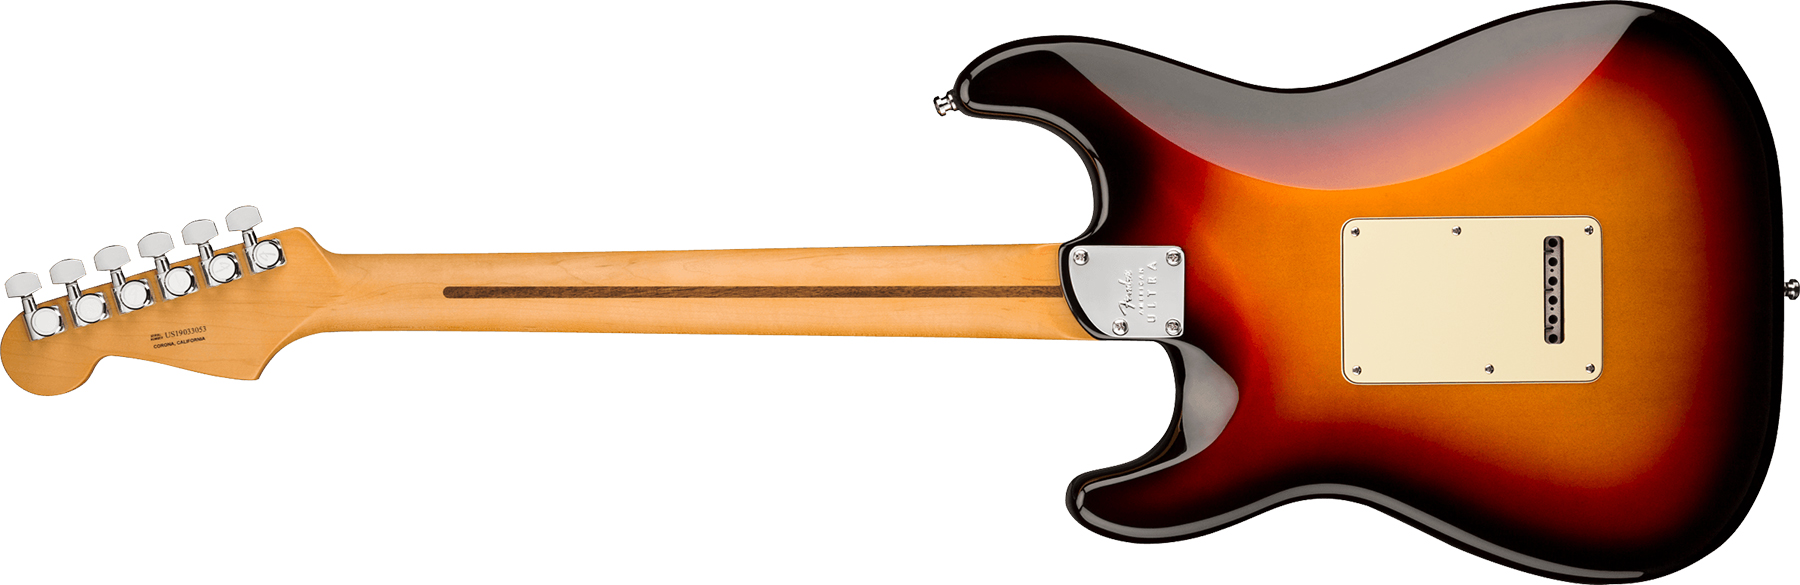 Fender Strat American Ultra 2019 Usa Mn - Ultraburst - Guitarra eléctrica con forma de str. - Variation 1